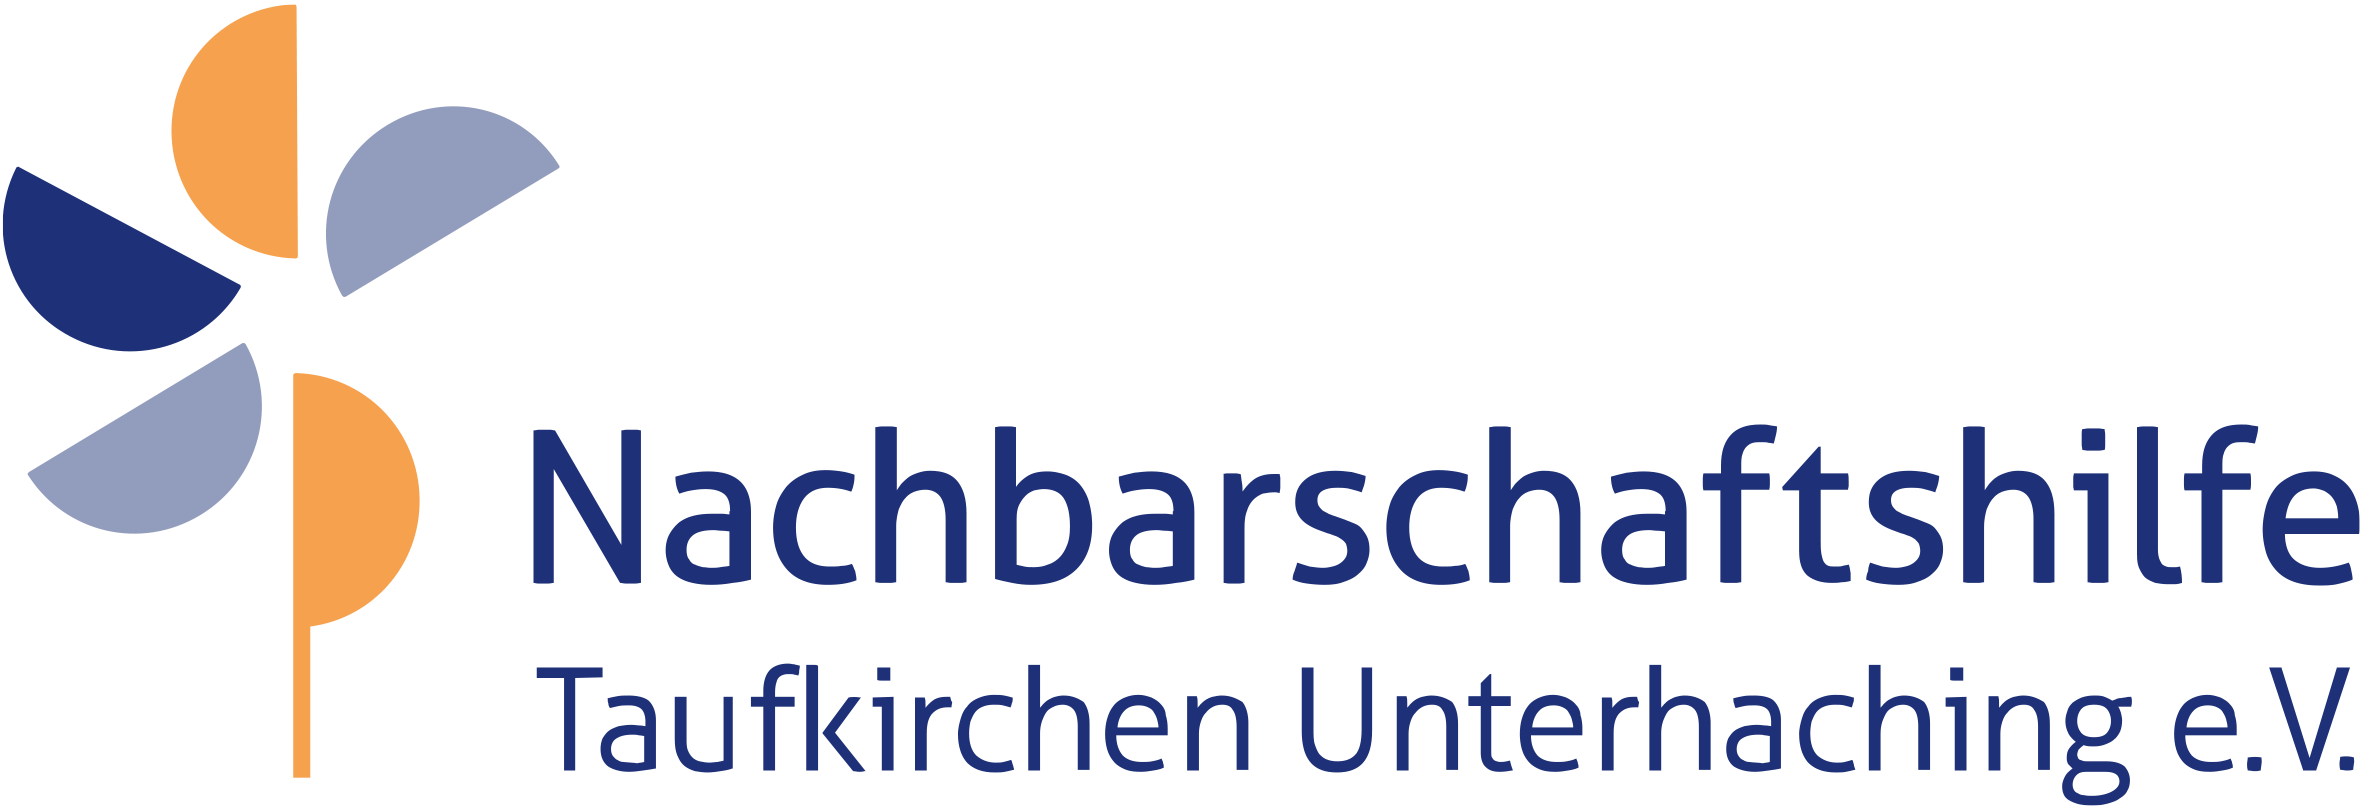 Nachbarschaftshilfe Taufkirchen Unterhaching - Mitmachbörse Ehrenamt